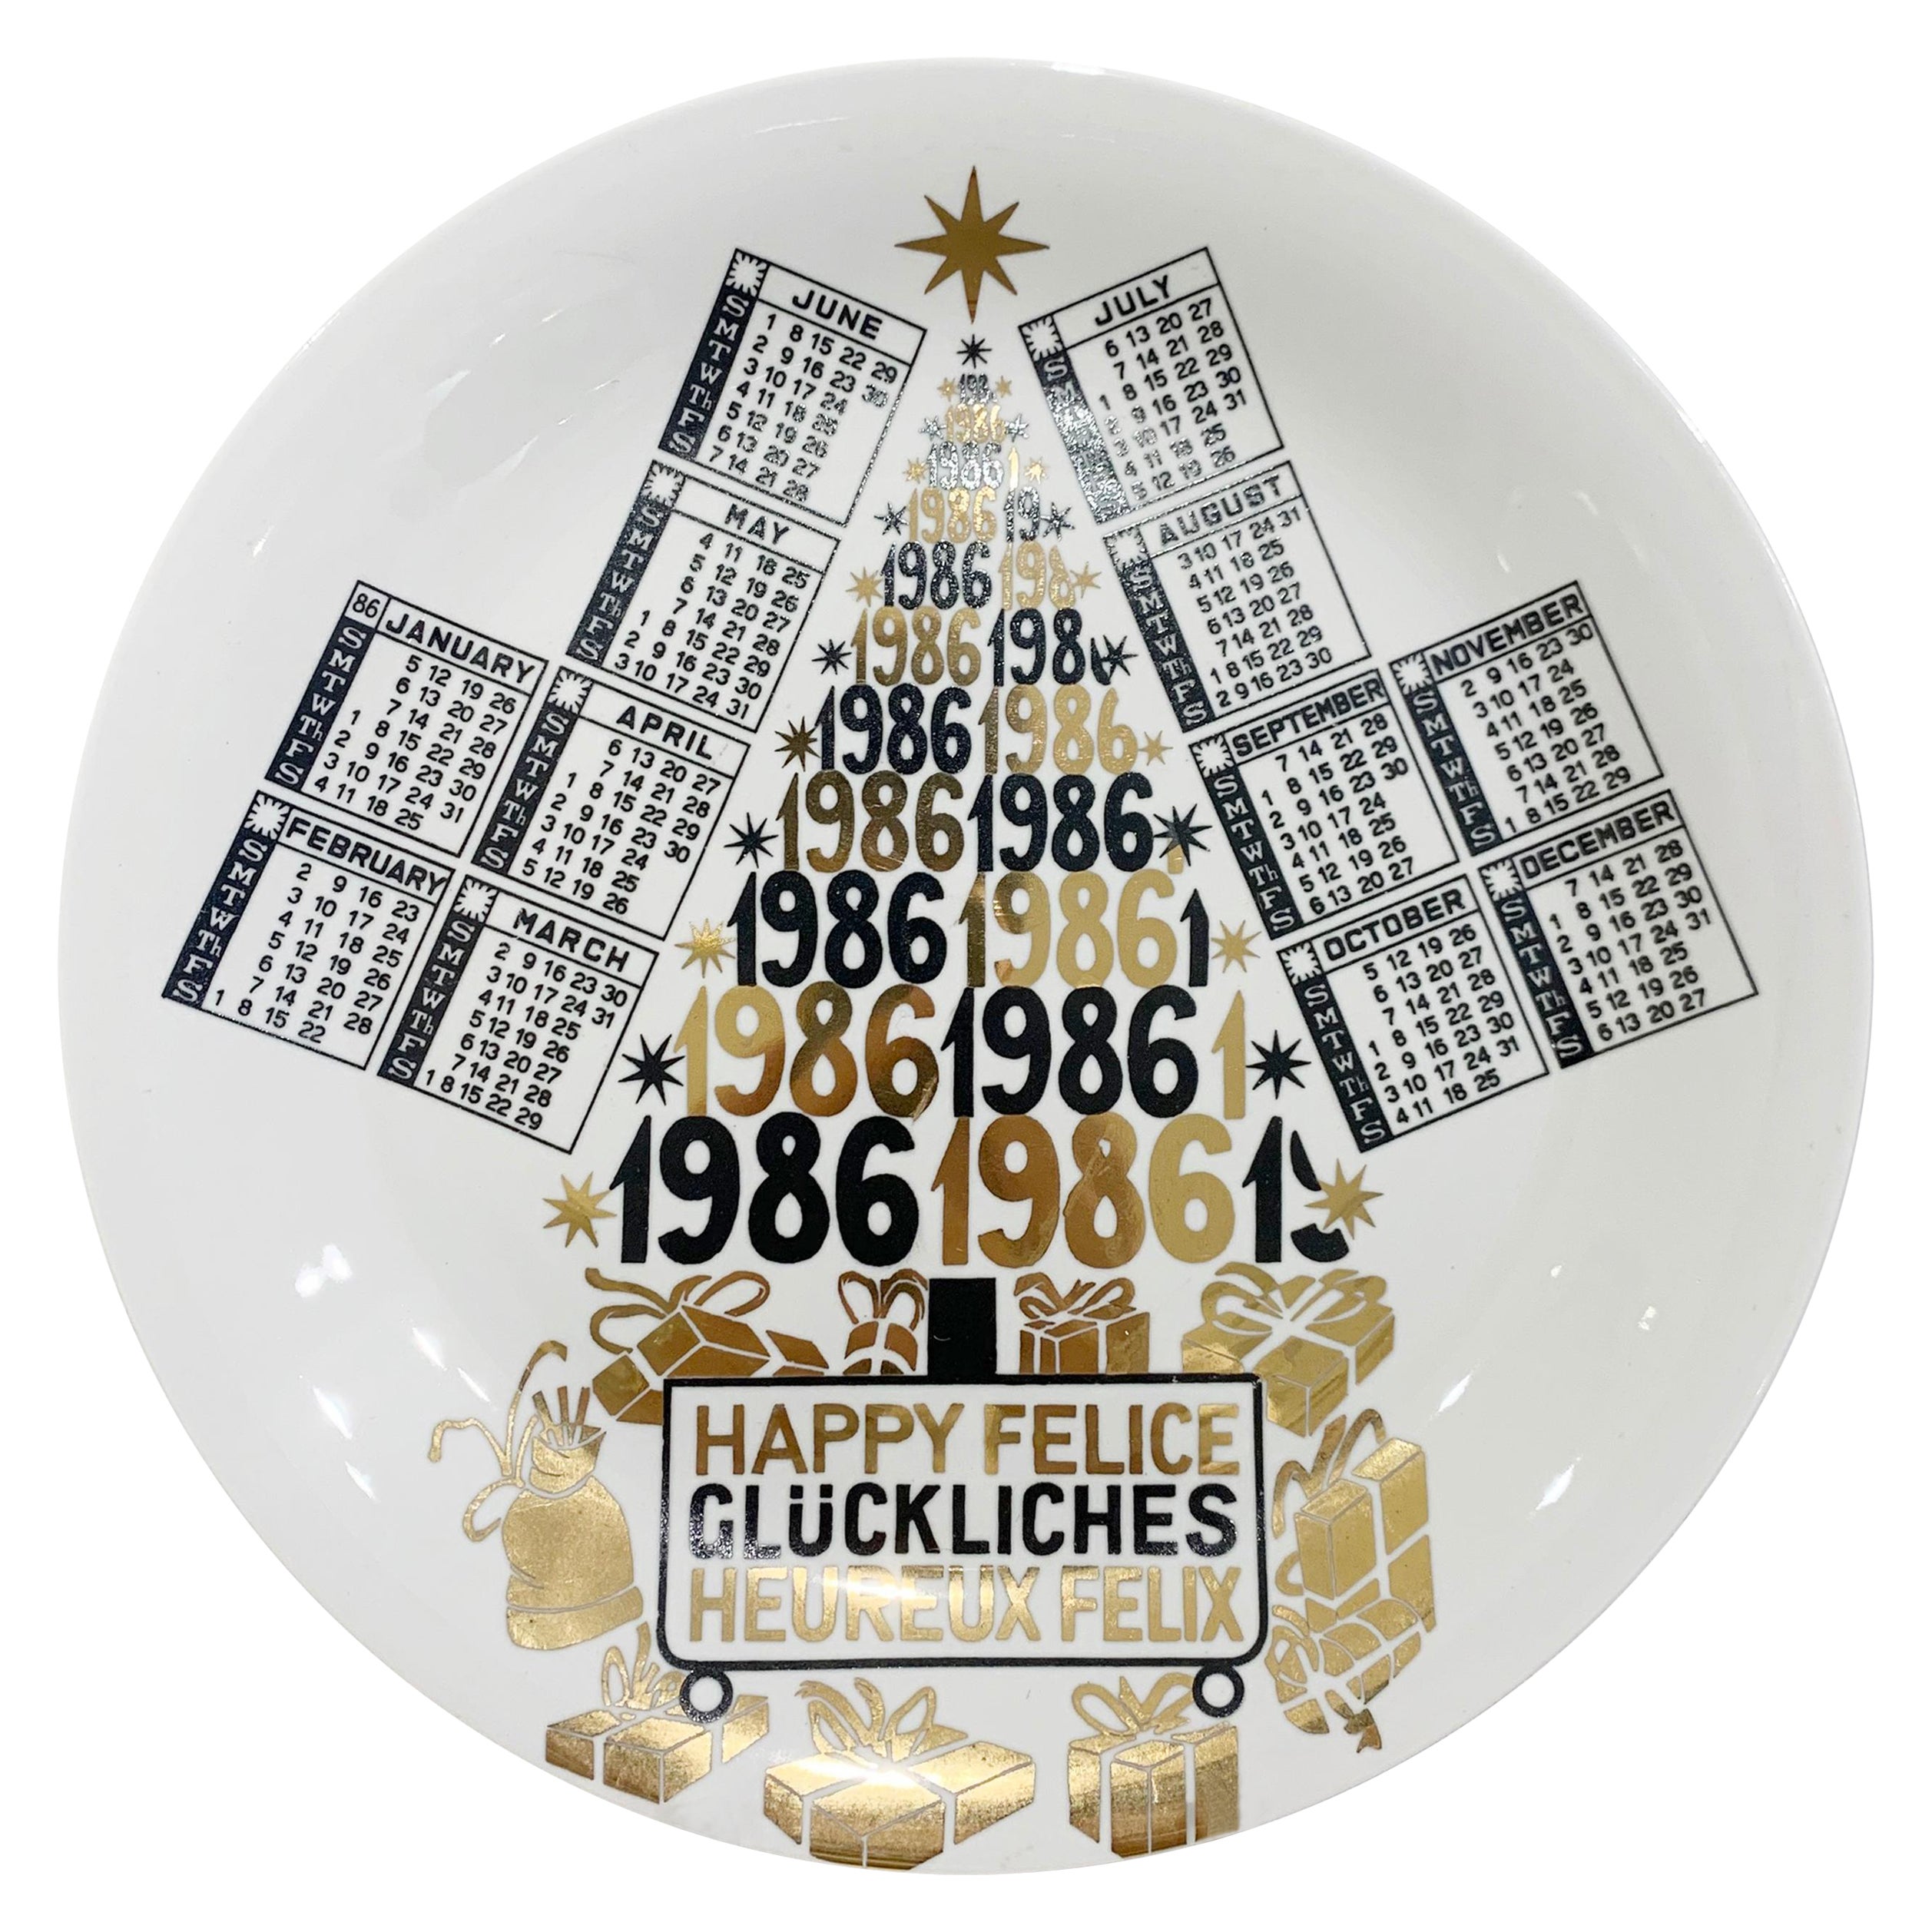 Assiette en porcelaine avec calendrier de Piero Fornasetti pour l'année 1986